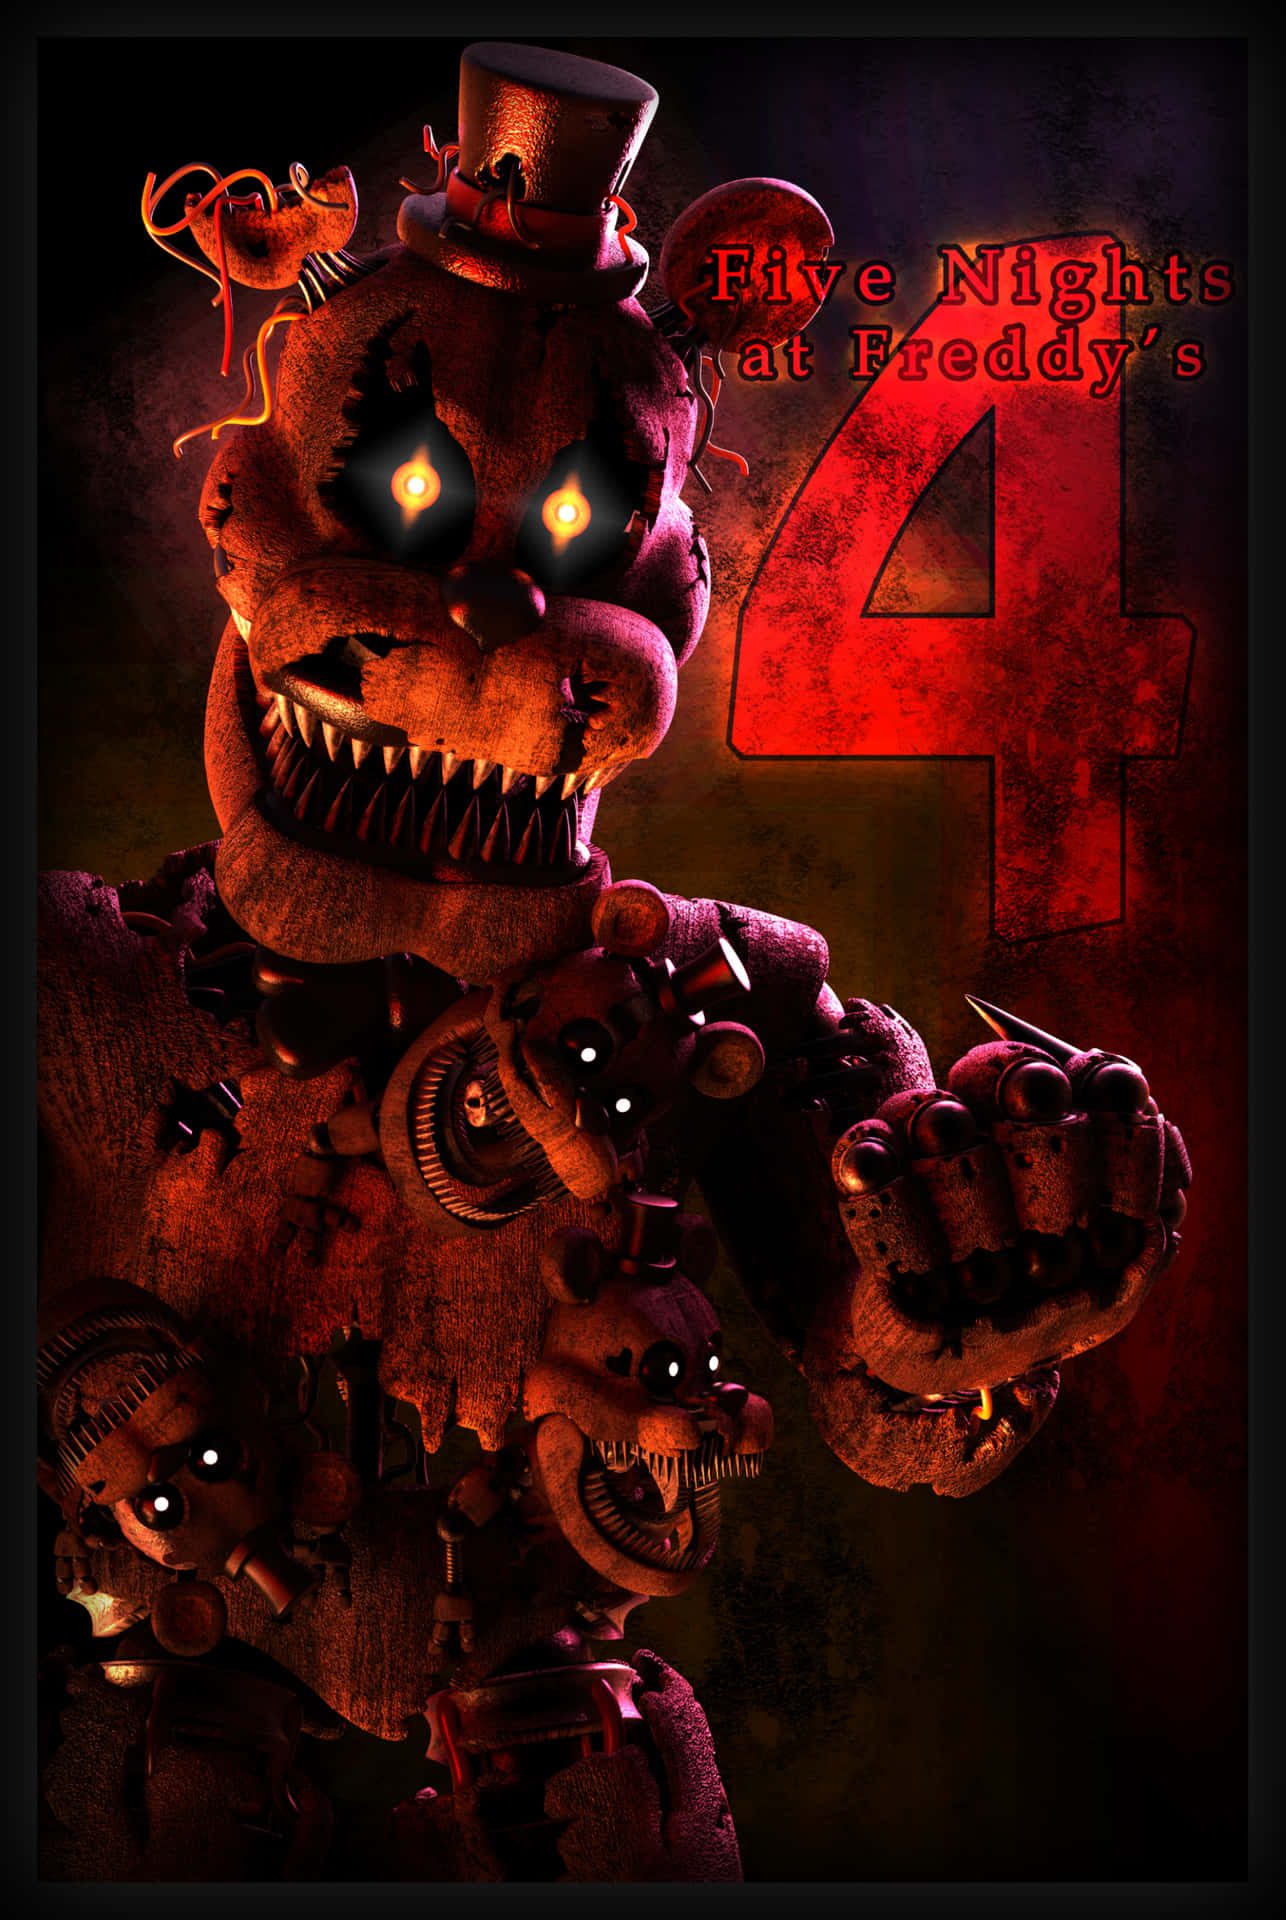 Undersøg hemmelighederne i Five Nights at Freddy's verden!